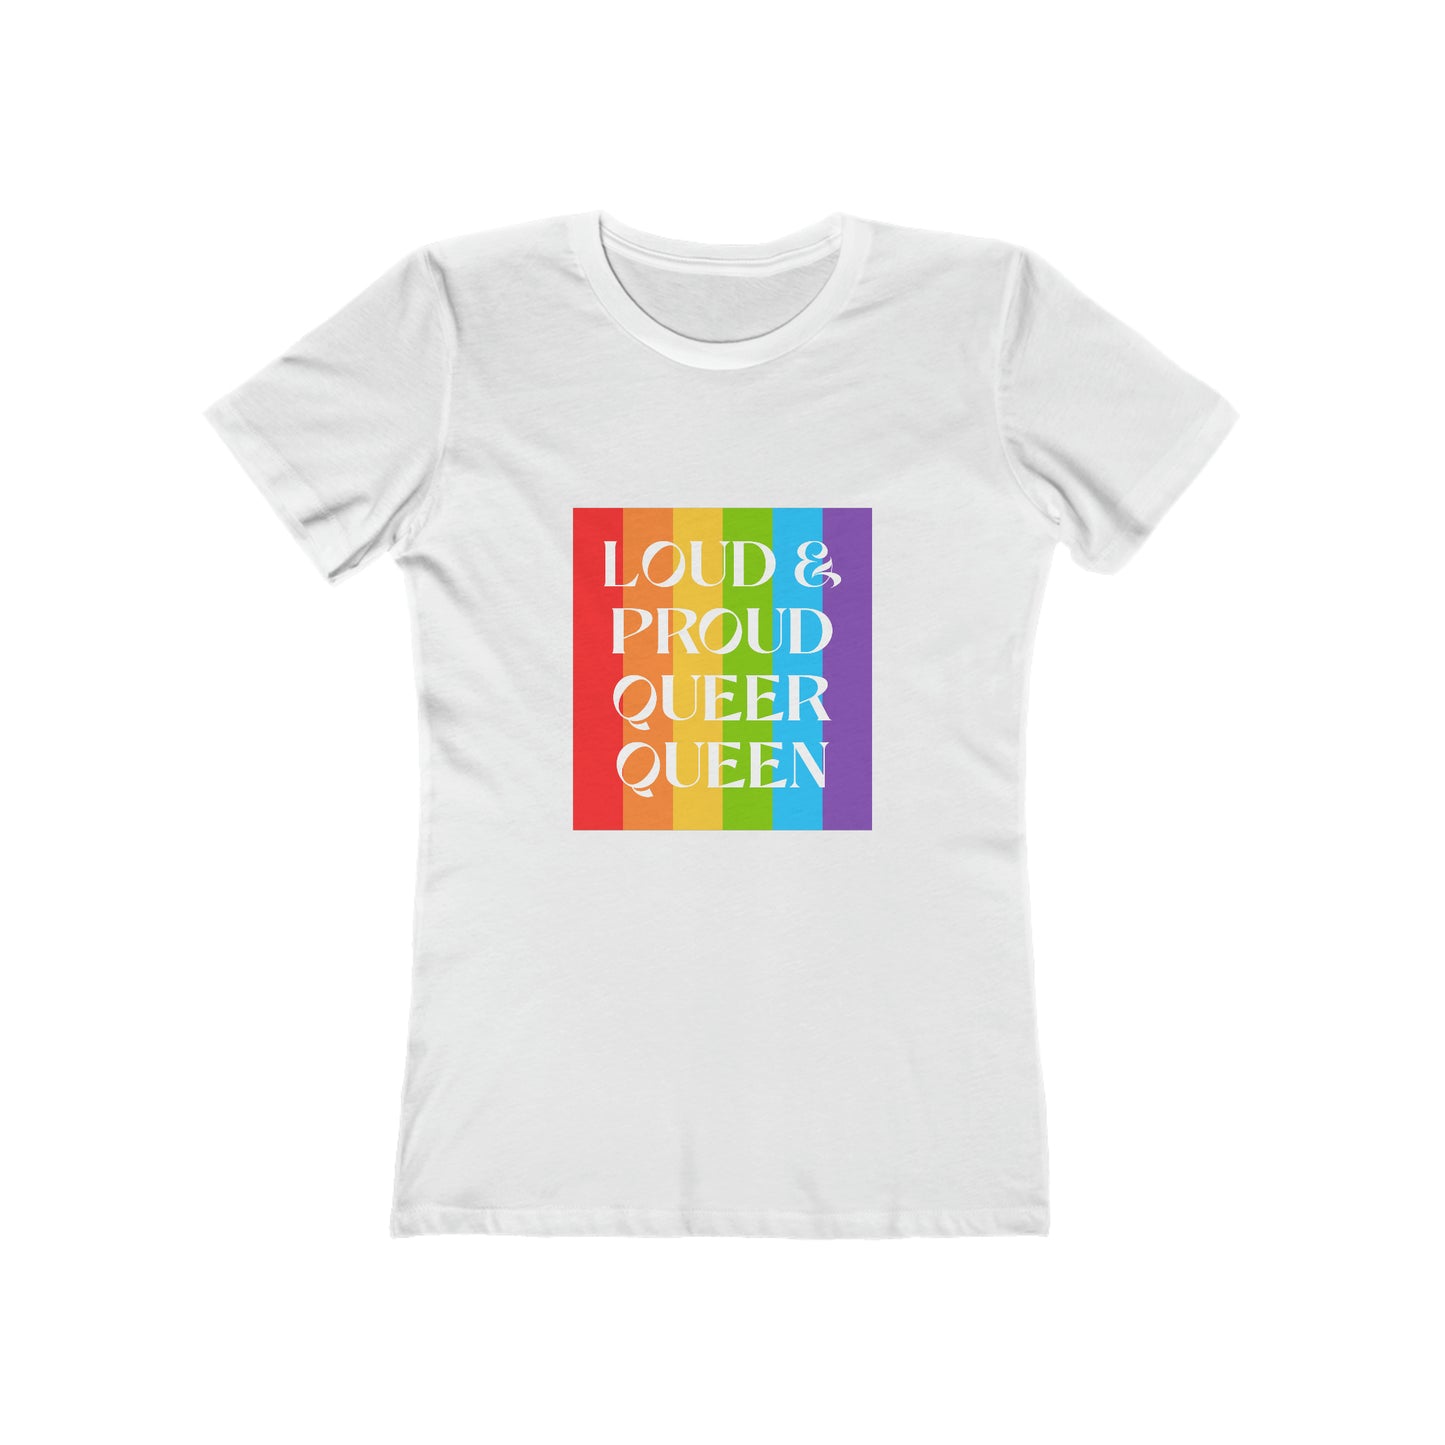 Loud & Proud Queer Queen - Women's T-shirt